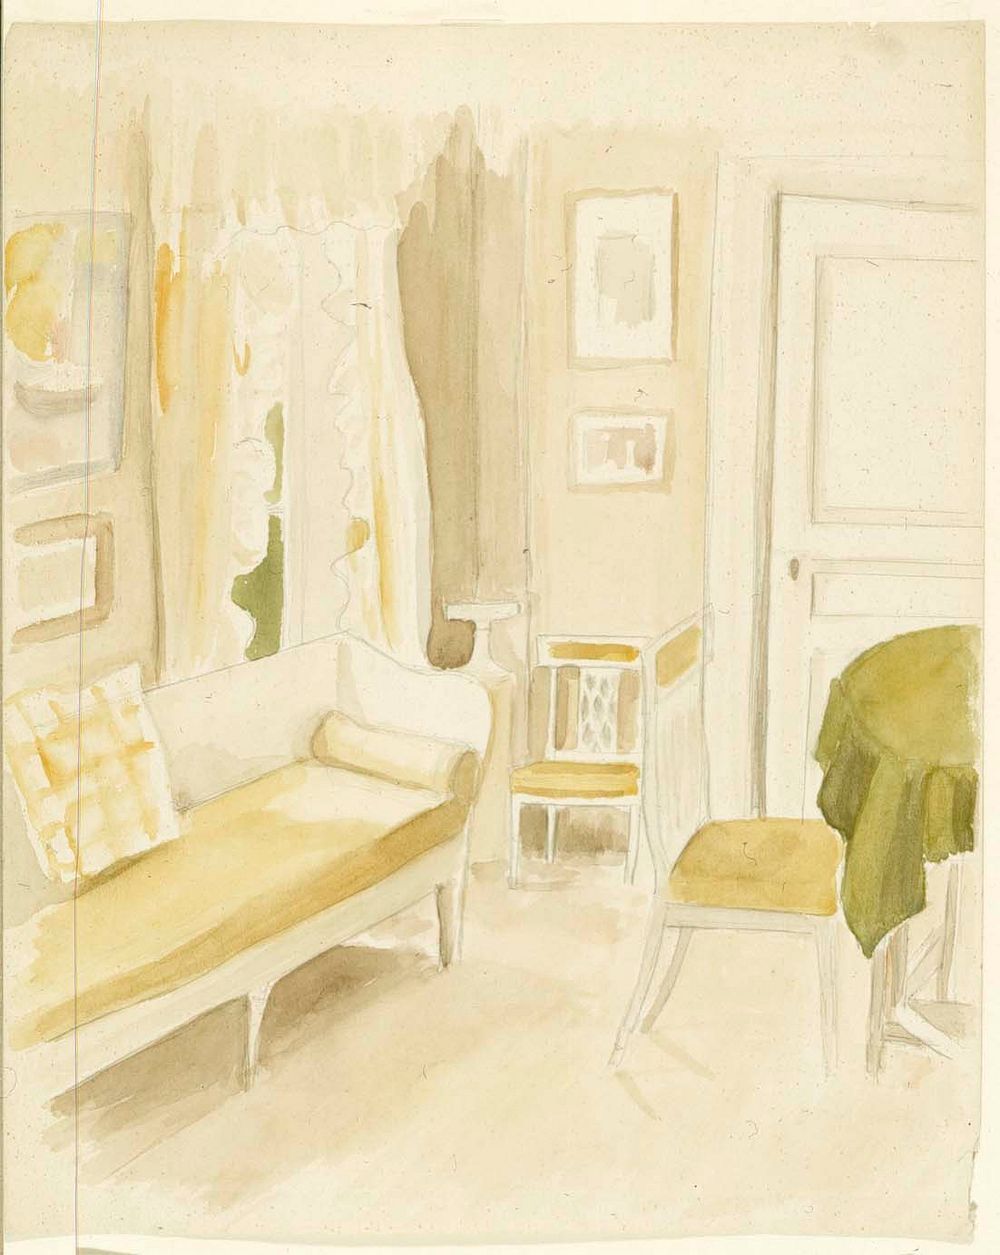 Interiööri taiteilijan kotoa, by Albert Edelfelt